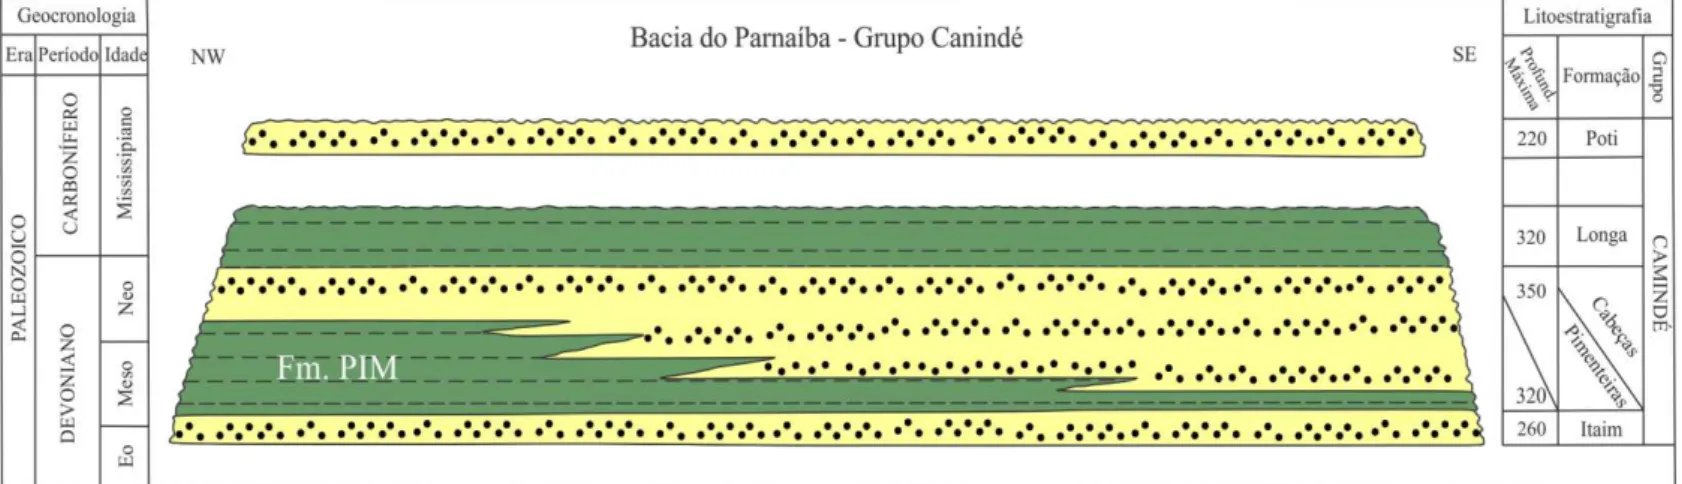 Figura 3: Carta cronoestratigráfica do Grupo Canindé. Simplificada de Vaz et al. (2007)